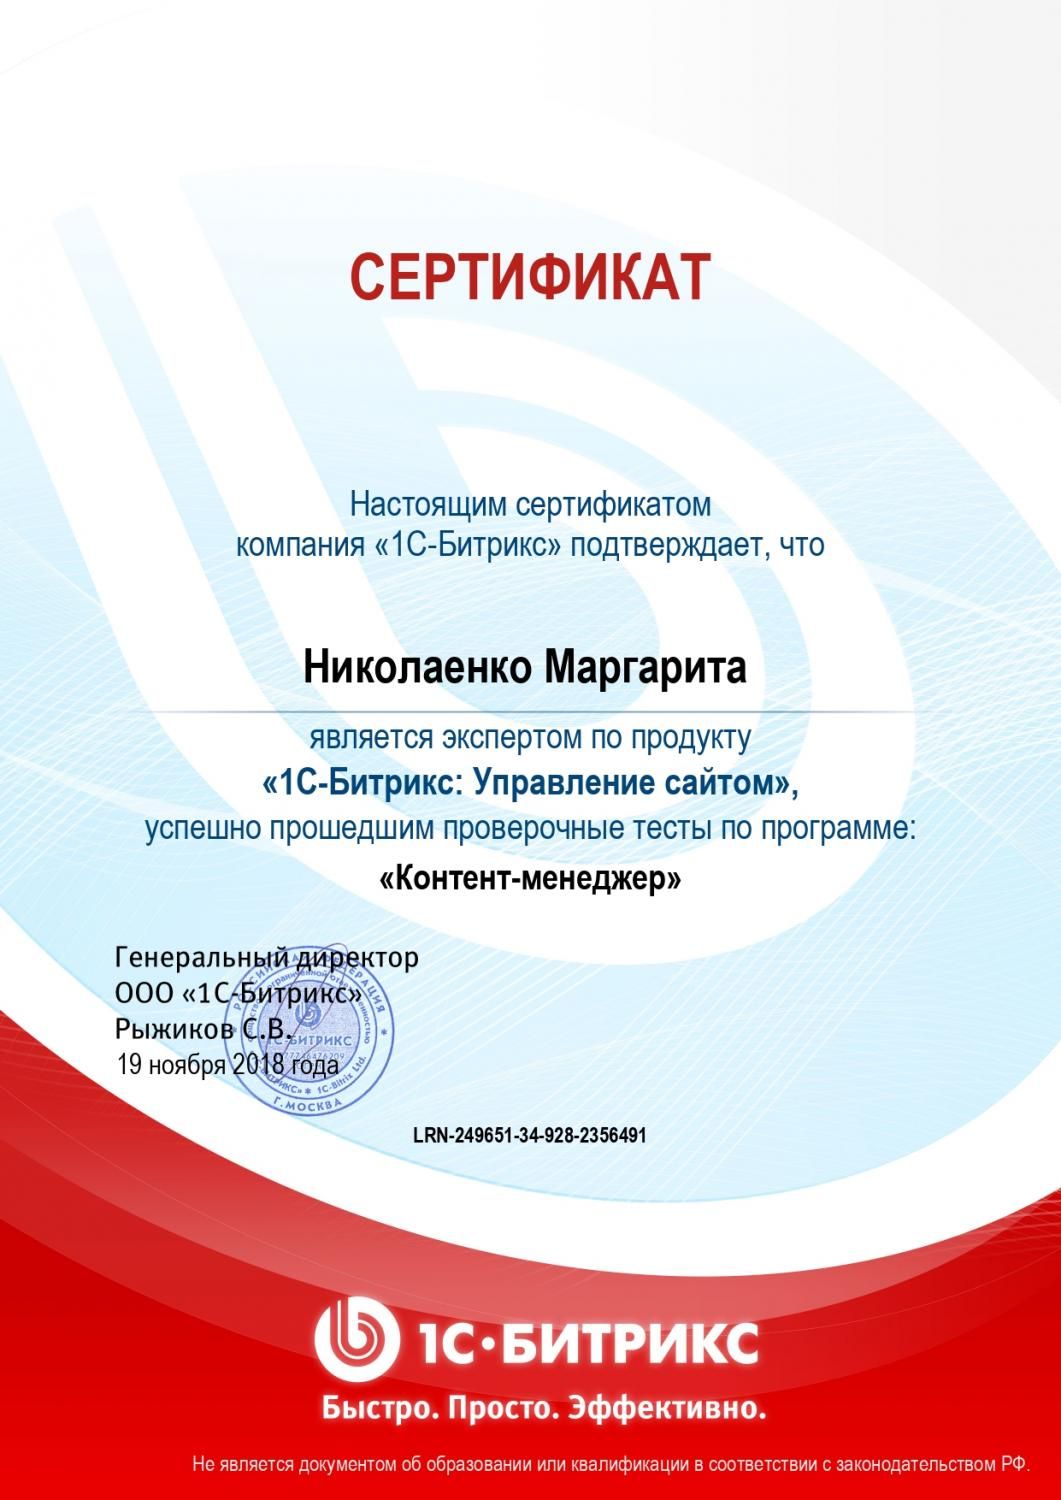 Сертификат эксперта по программе "Контент-менеджер" - Николаенко М. в Благовещенска